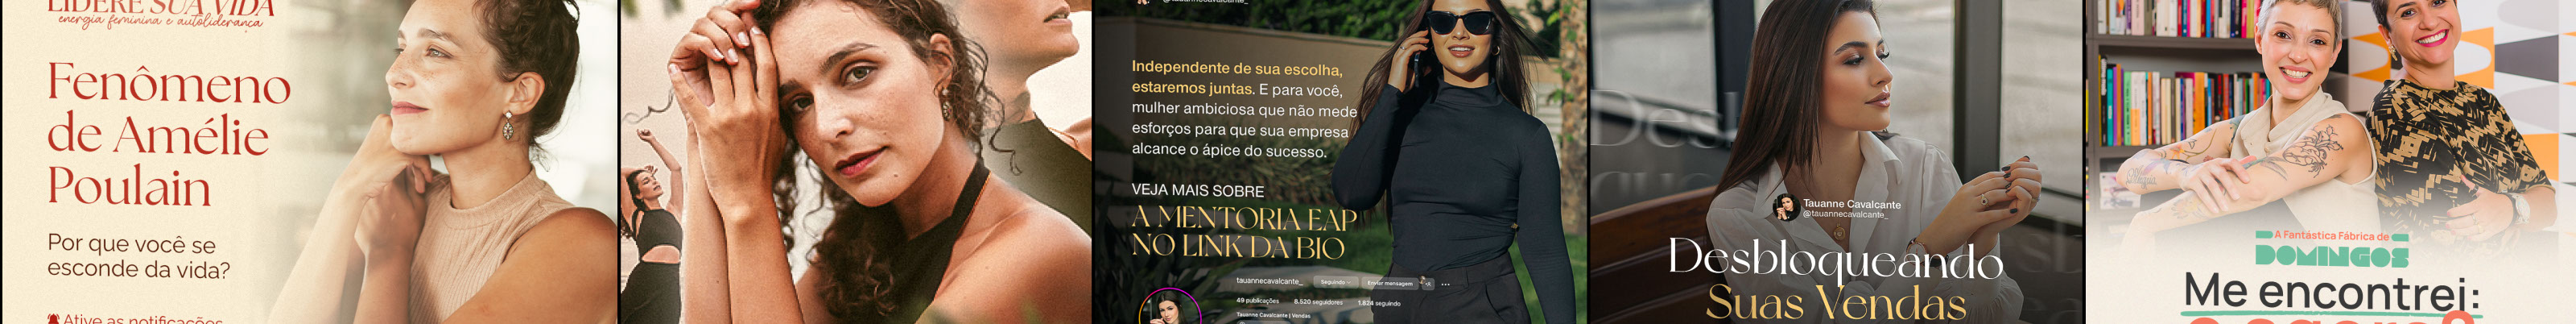 Cauã Studio Andrade's profile banner